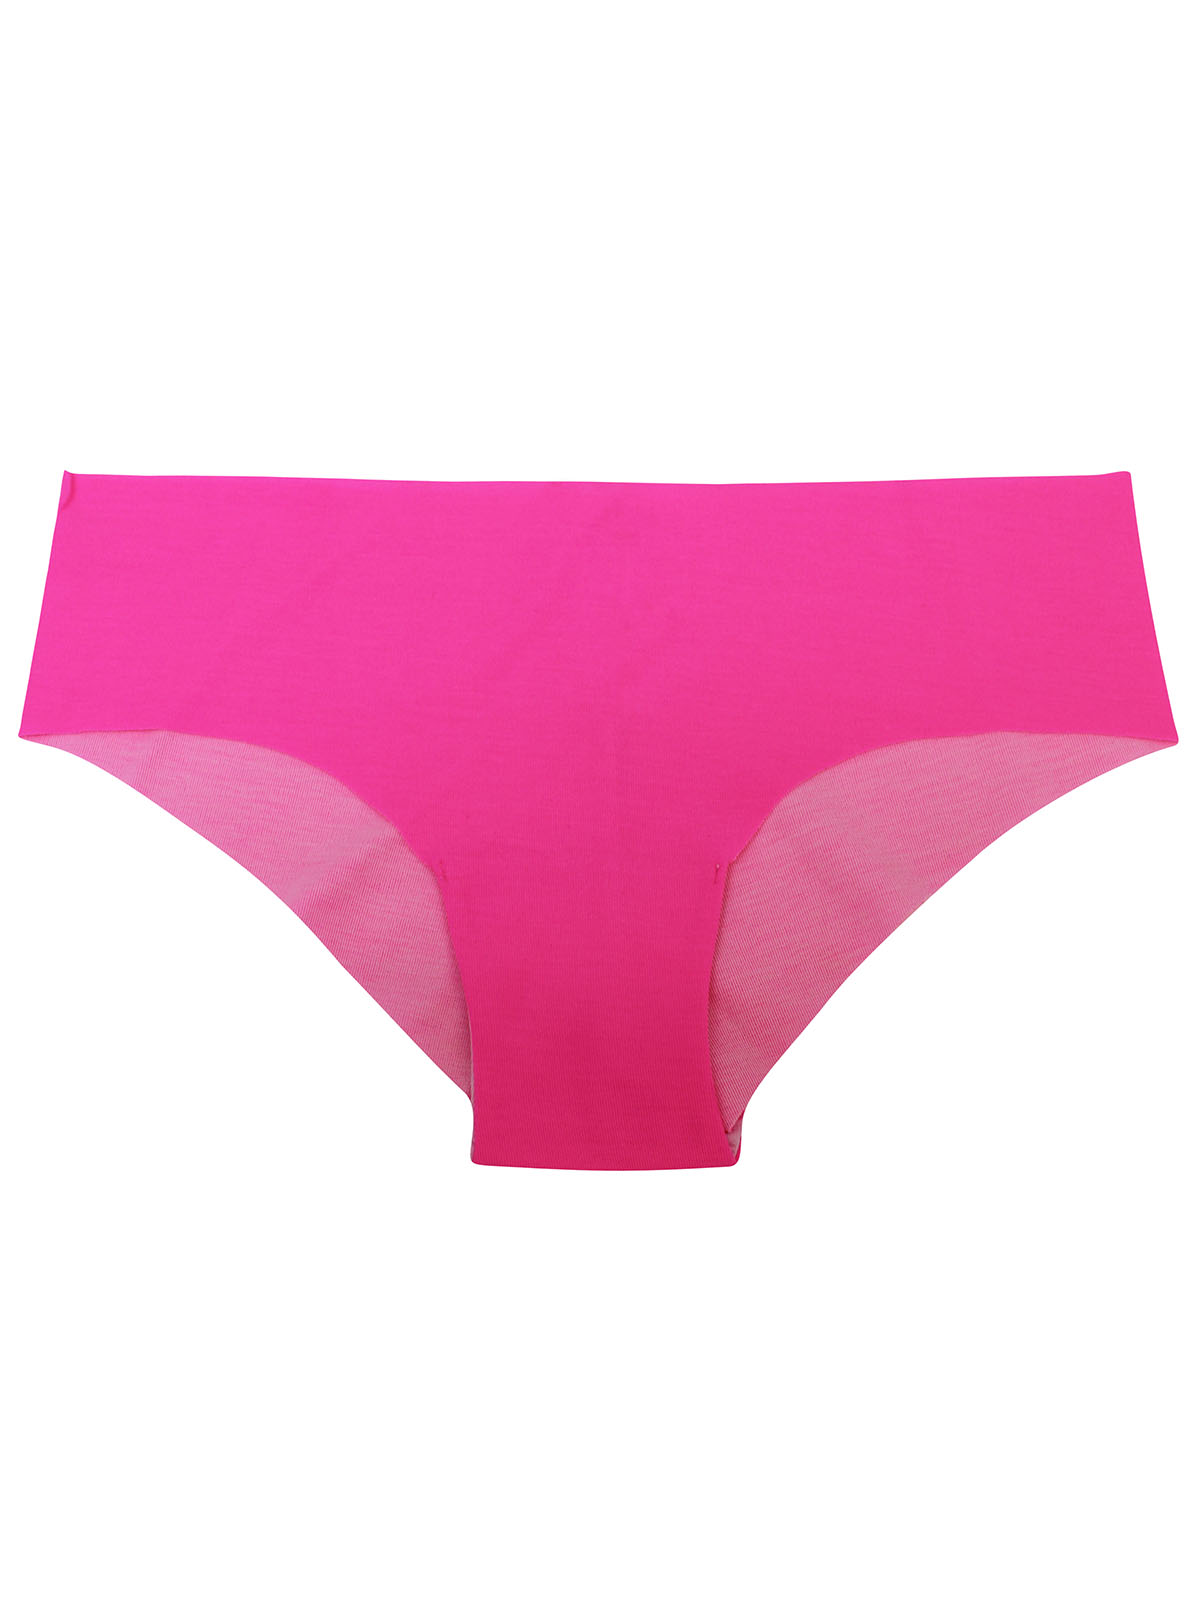 La Senza Lingerie Direct Mb Panties, POP PINK, M price in Saudi